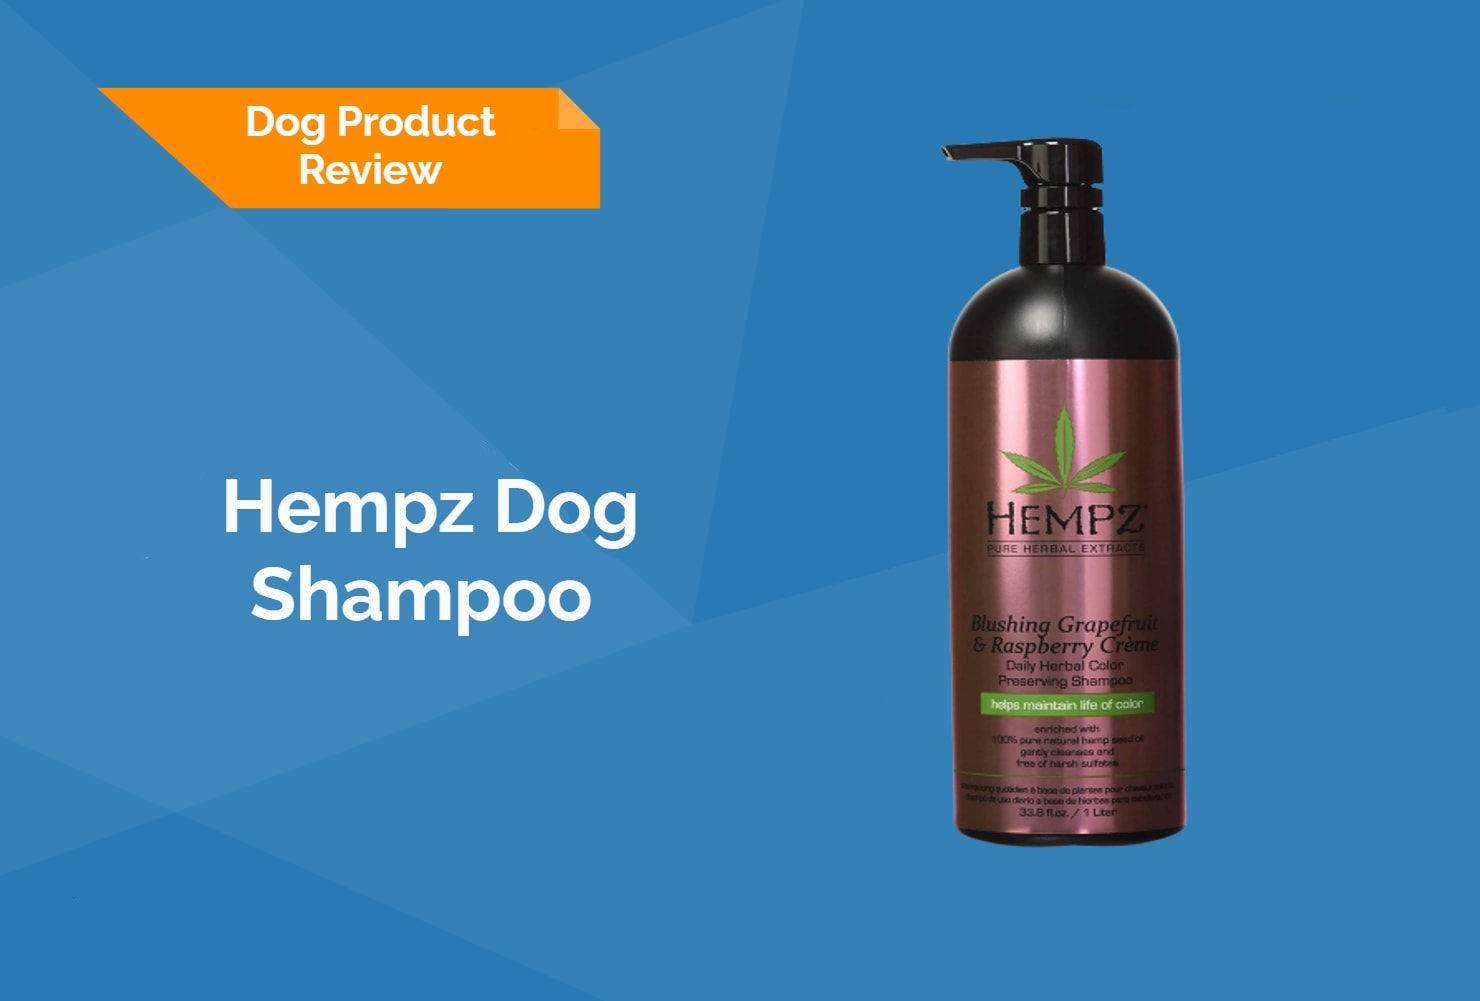 Hempz Dog Shampoo Review